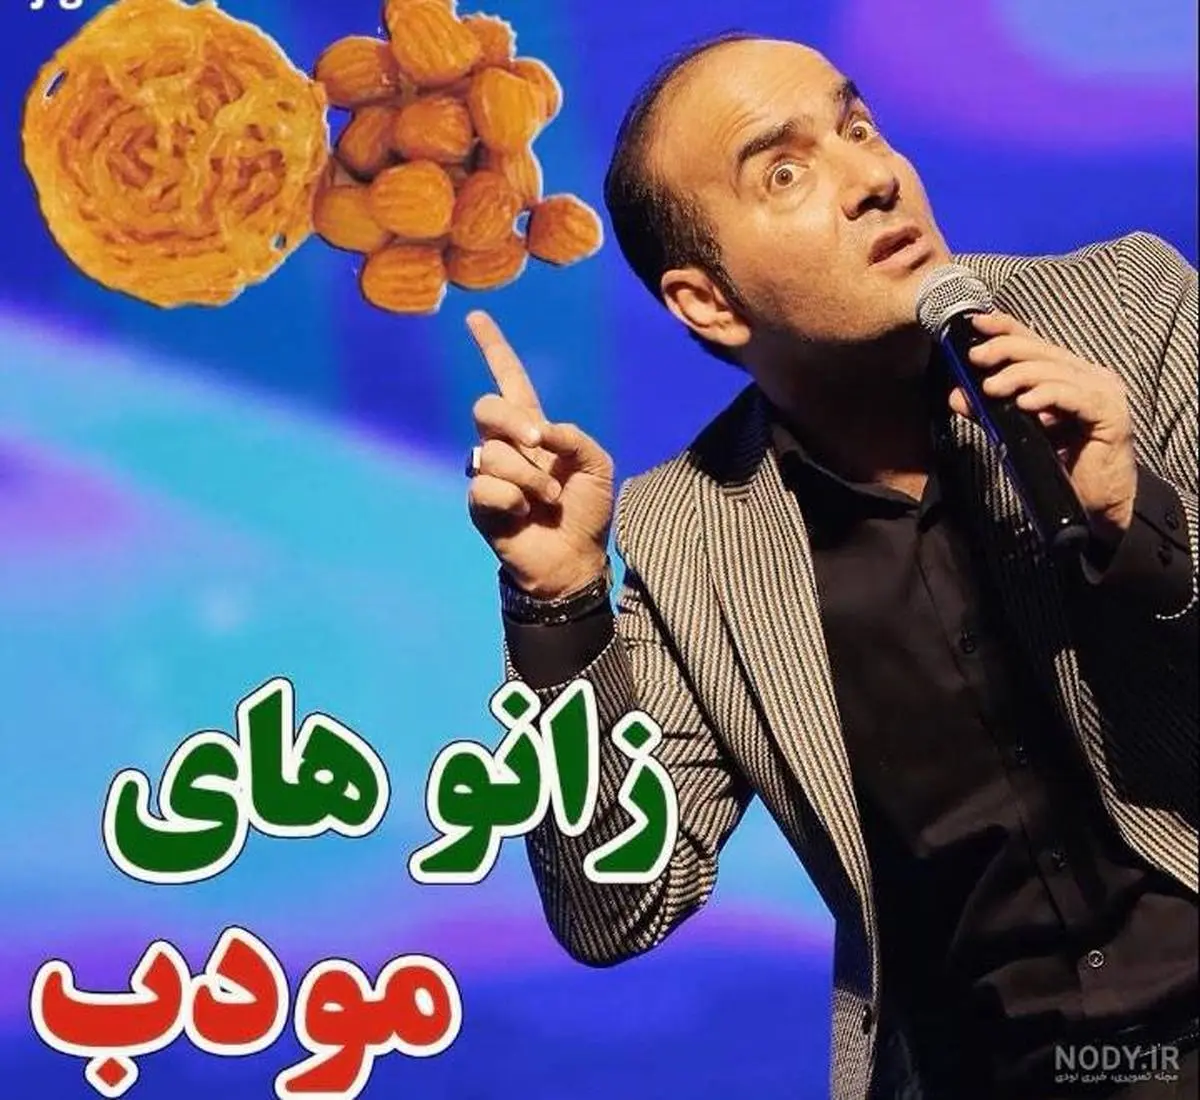 (ویدئو) کلیپ خنده دار حسن ریوندی، دماغ های خانم ها چرا شبیه هم شدن